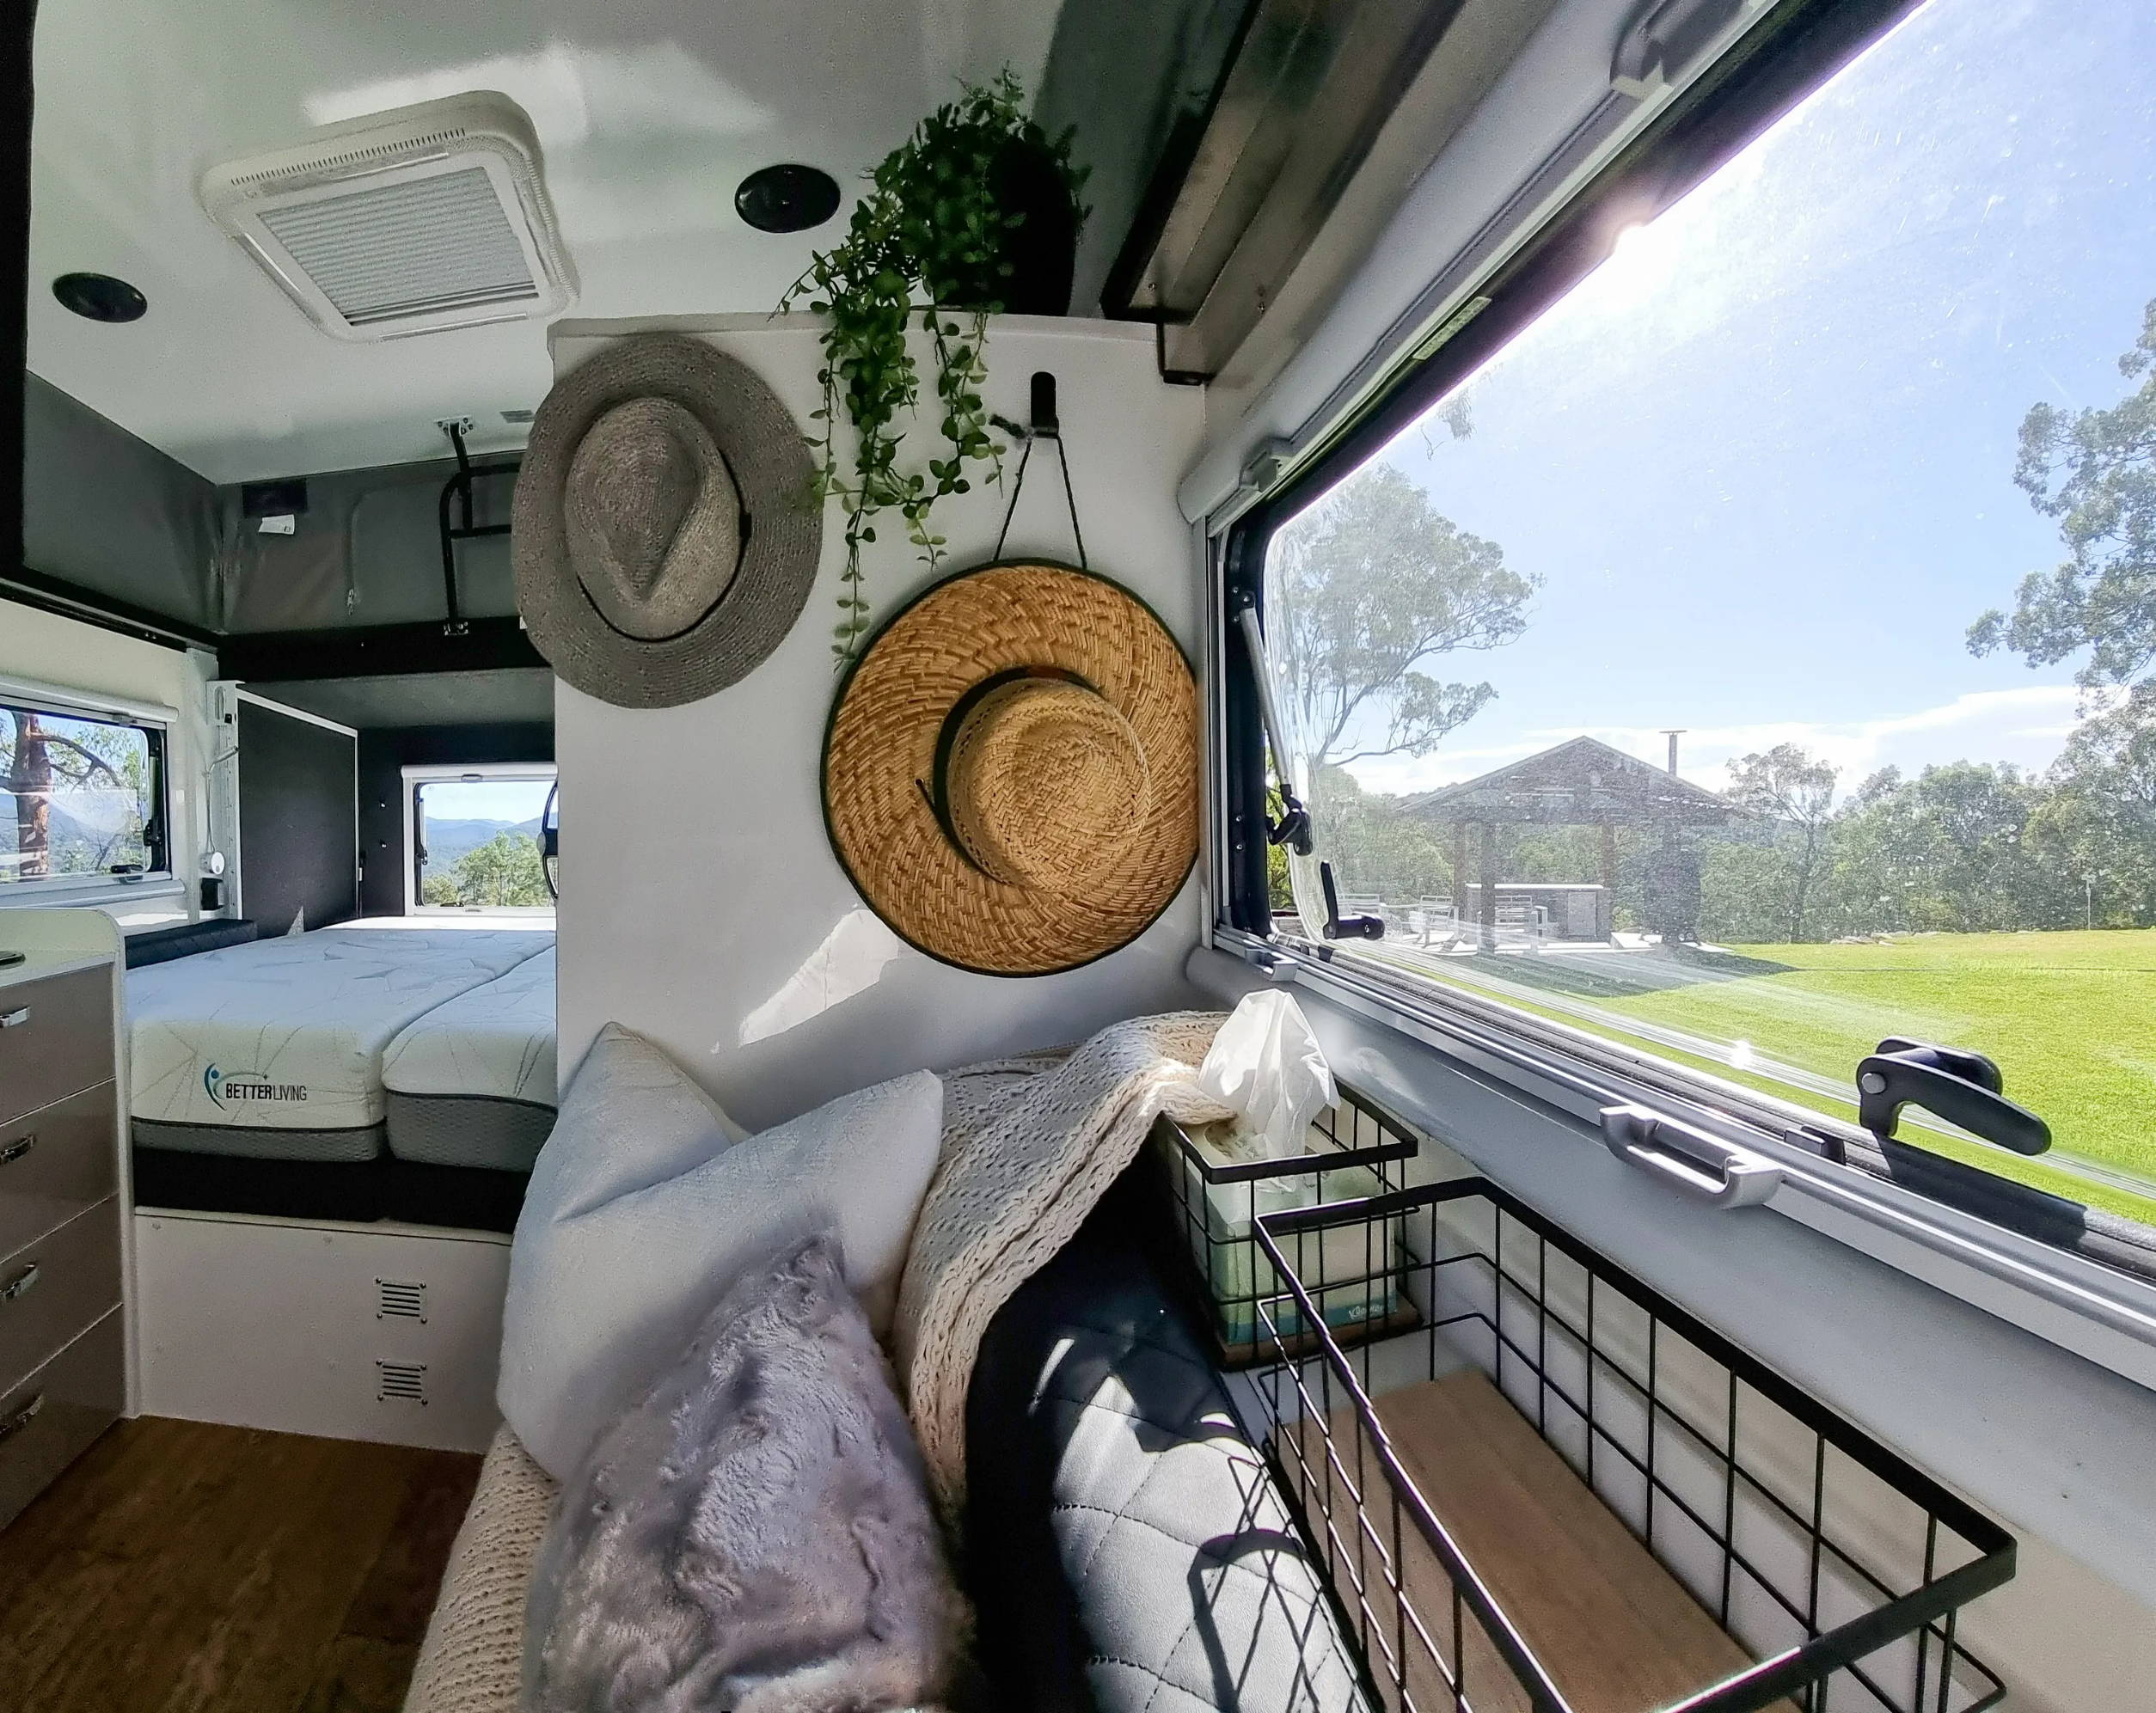 adjustable beds installed in a caravan